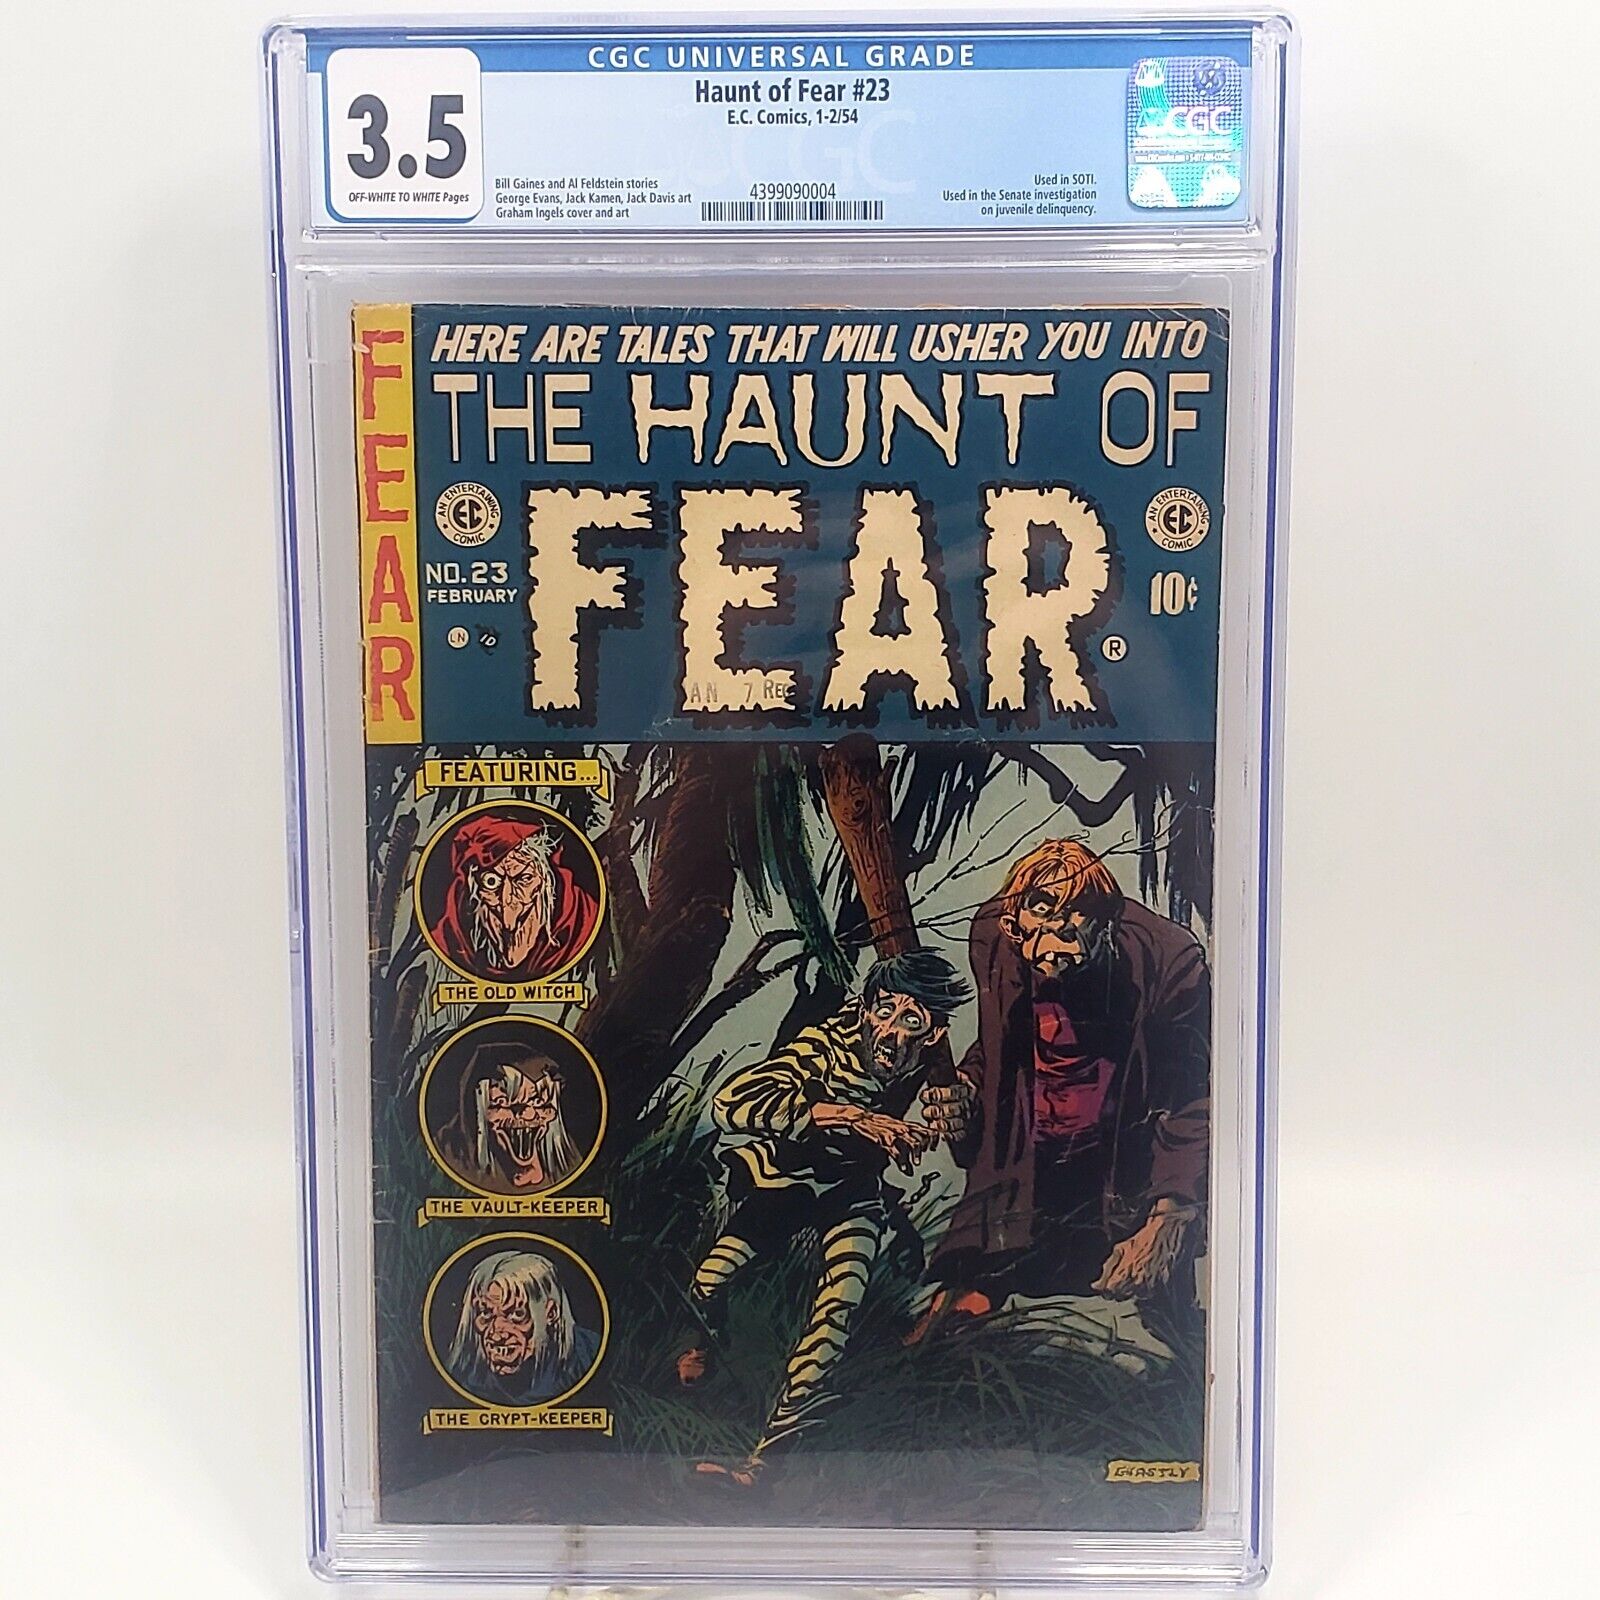 Haunt of Fear #23 (1954) [E.C. Comics] (CGC: 3.5)